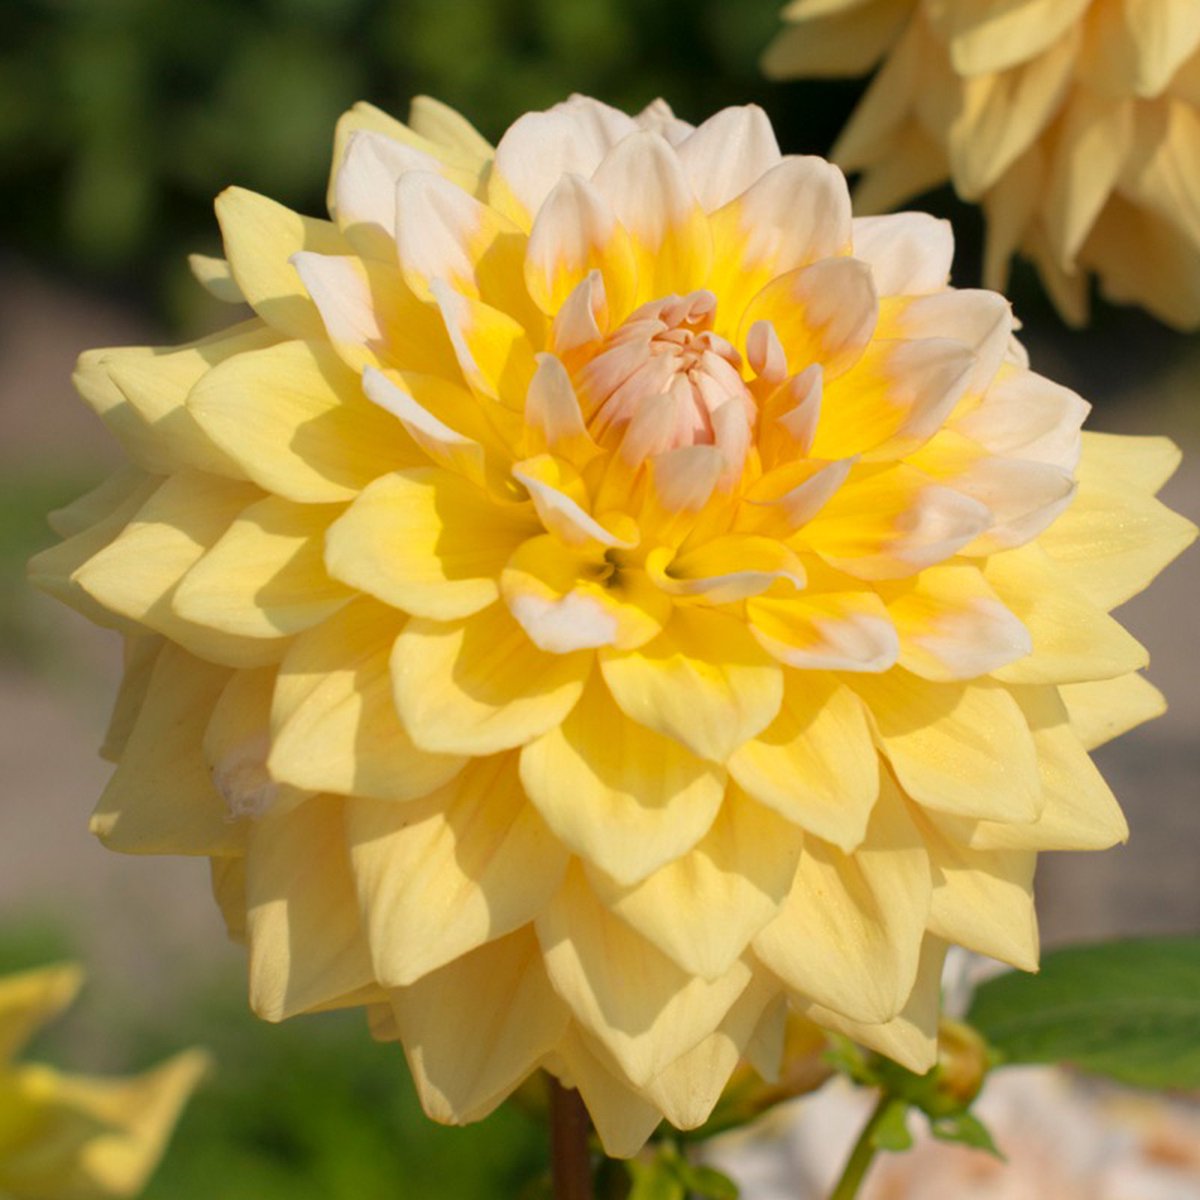 Dahlia Seattle | 6 stuks | Decoratieve Dahlia | Knol | Geel | Wit | Dahlia Knollen van Top Kwaliteit | 100% Bloeigarantie | QFB Gardening